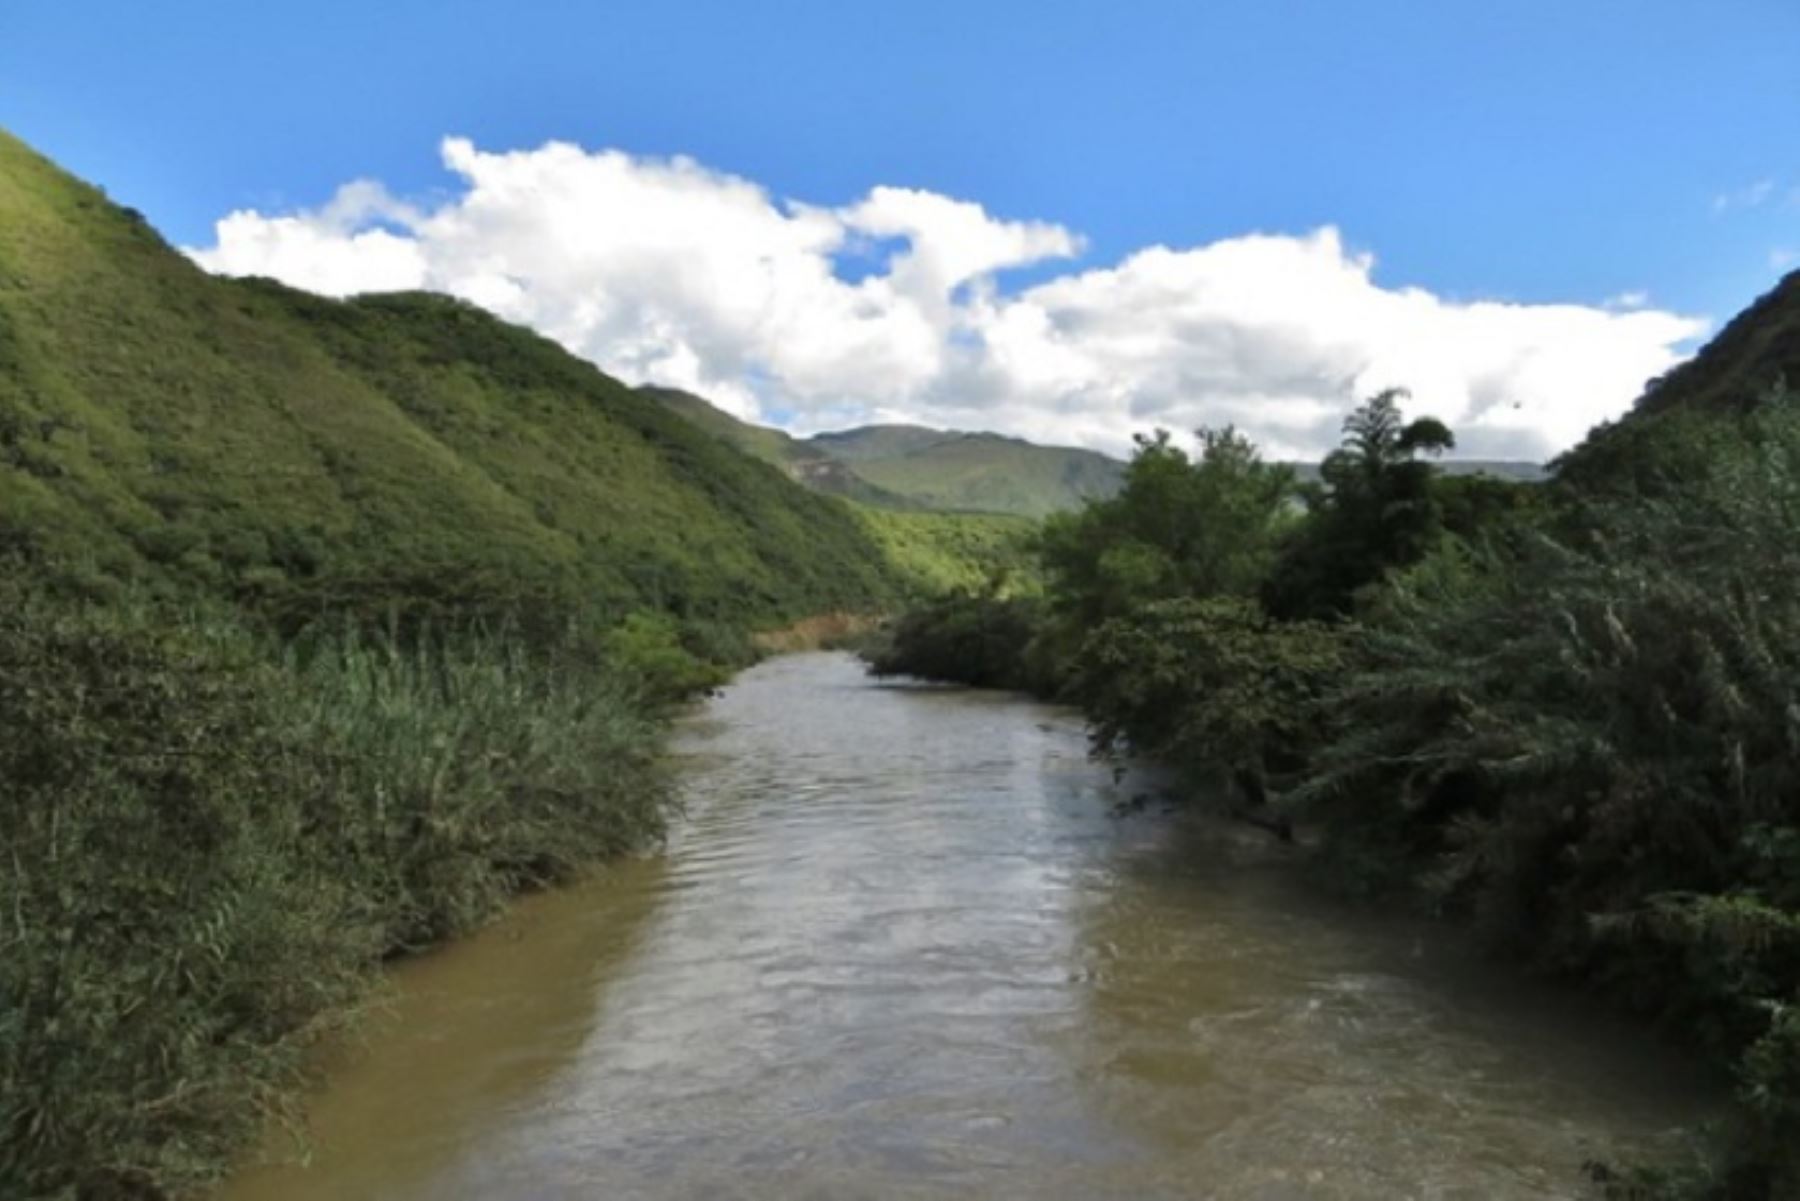 A las 18:00 horas de hoy, el río Utcubamba reportó un nivel de 5.27 metros en la estación hidrológica Naranjito.